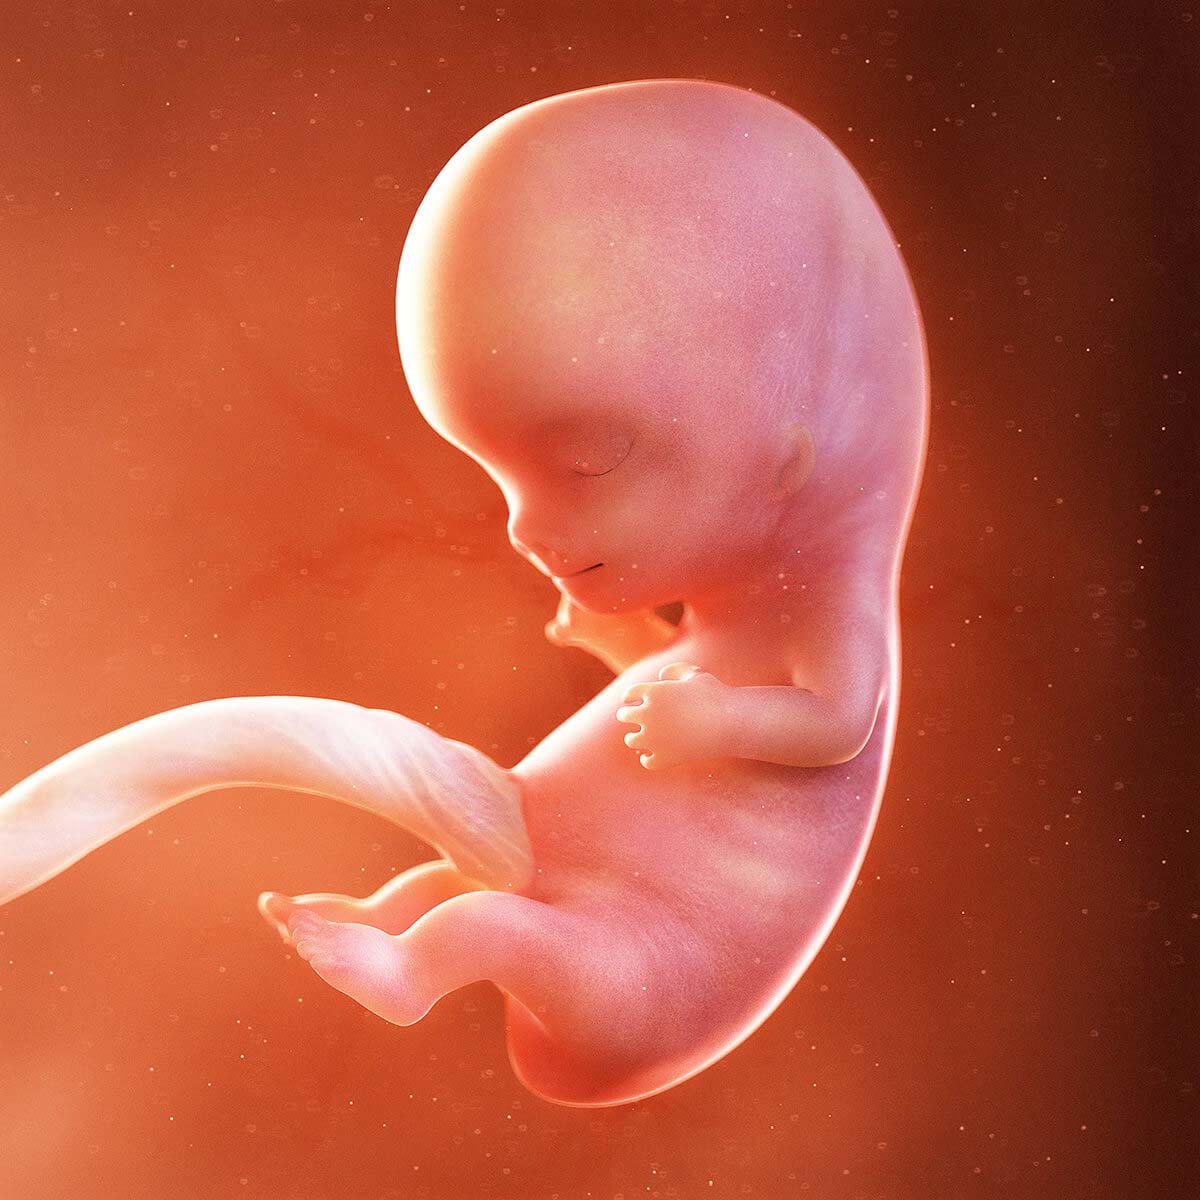 Thai nhi 9 tuần tuổi đã phát triển thành bào thai